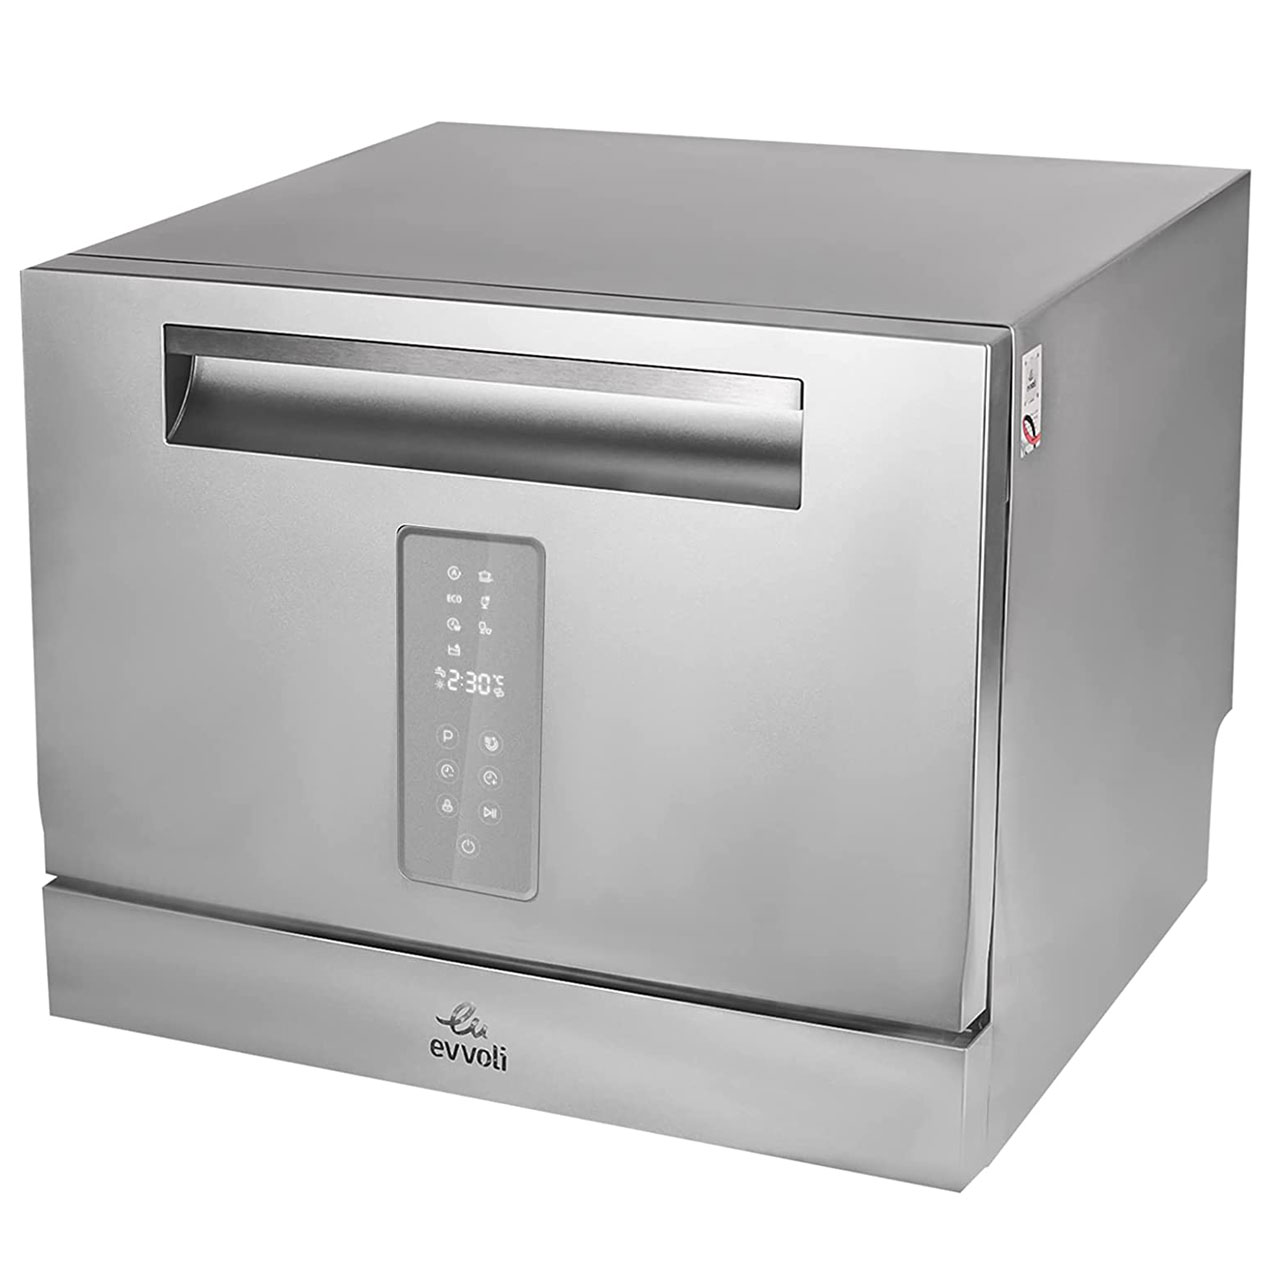 فروش نقدی و اقساطی ماشین ظرفشویی ایوولی مدل EVDW-6MS